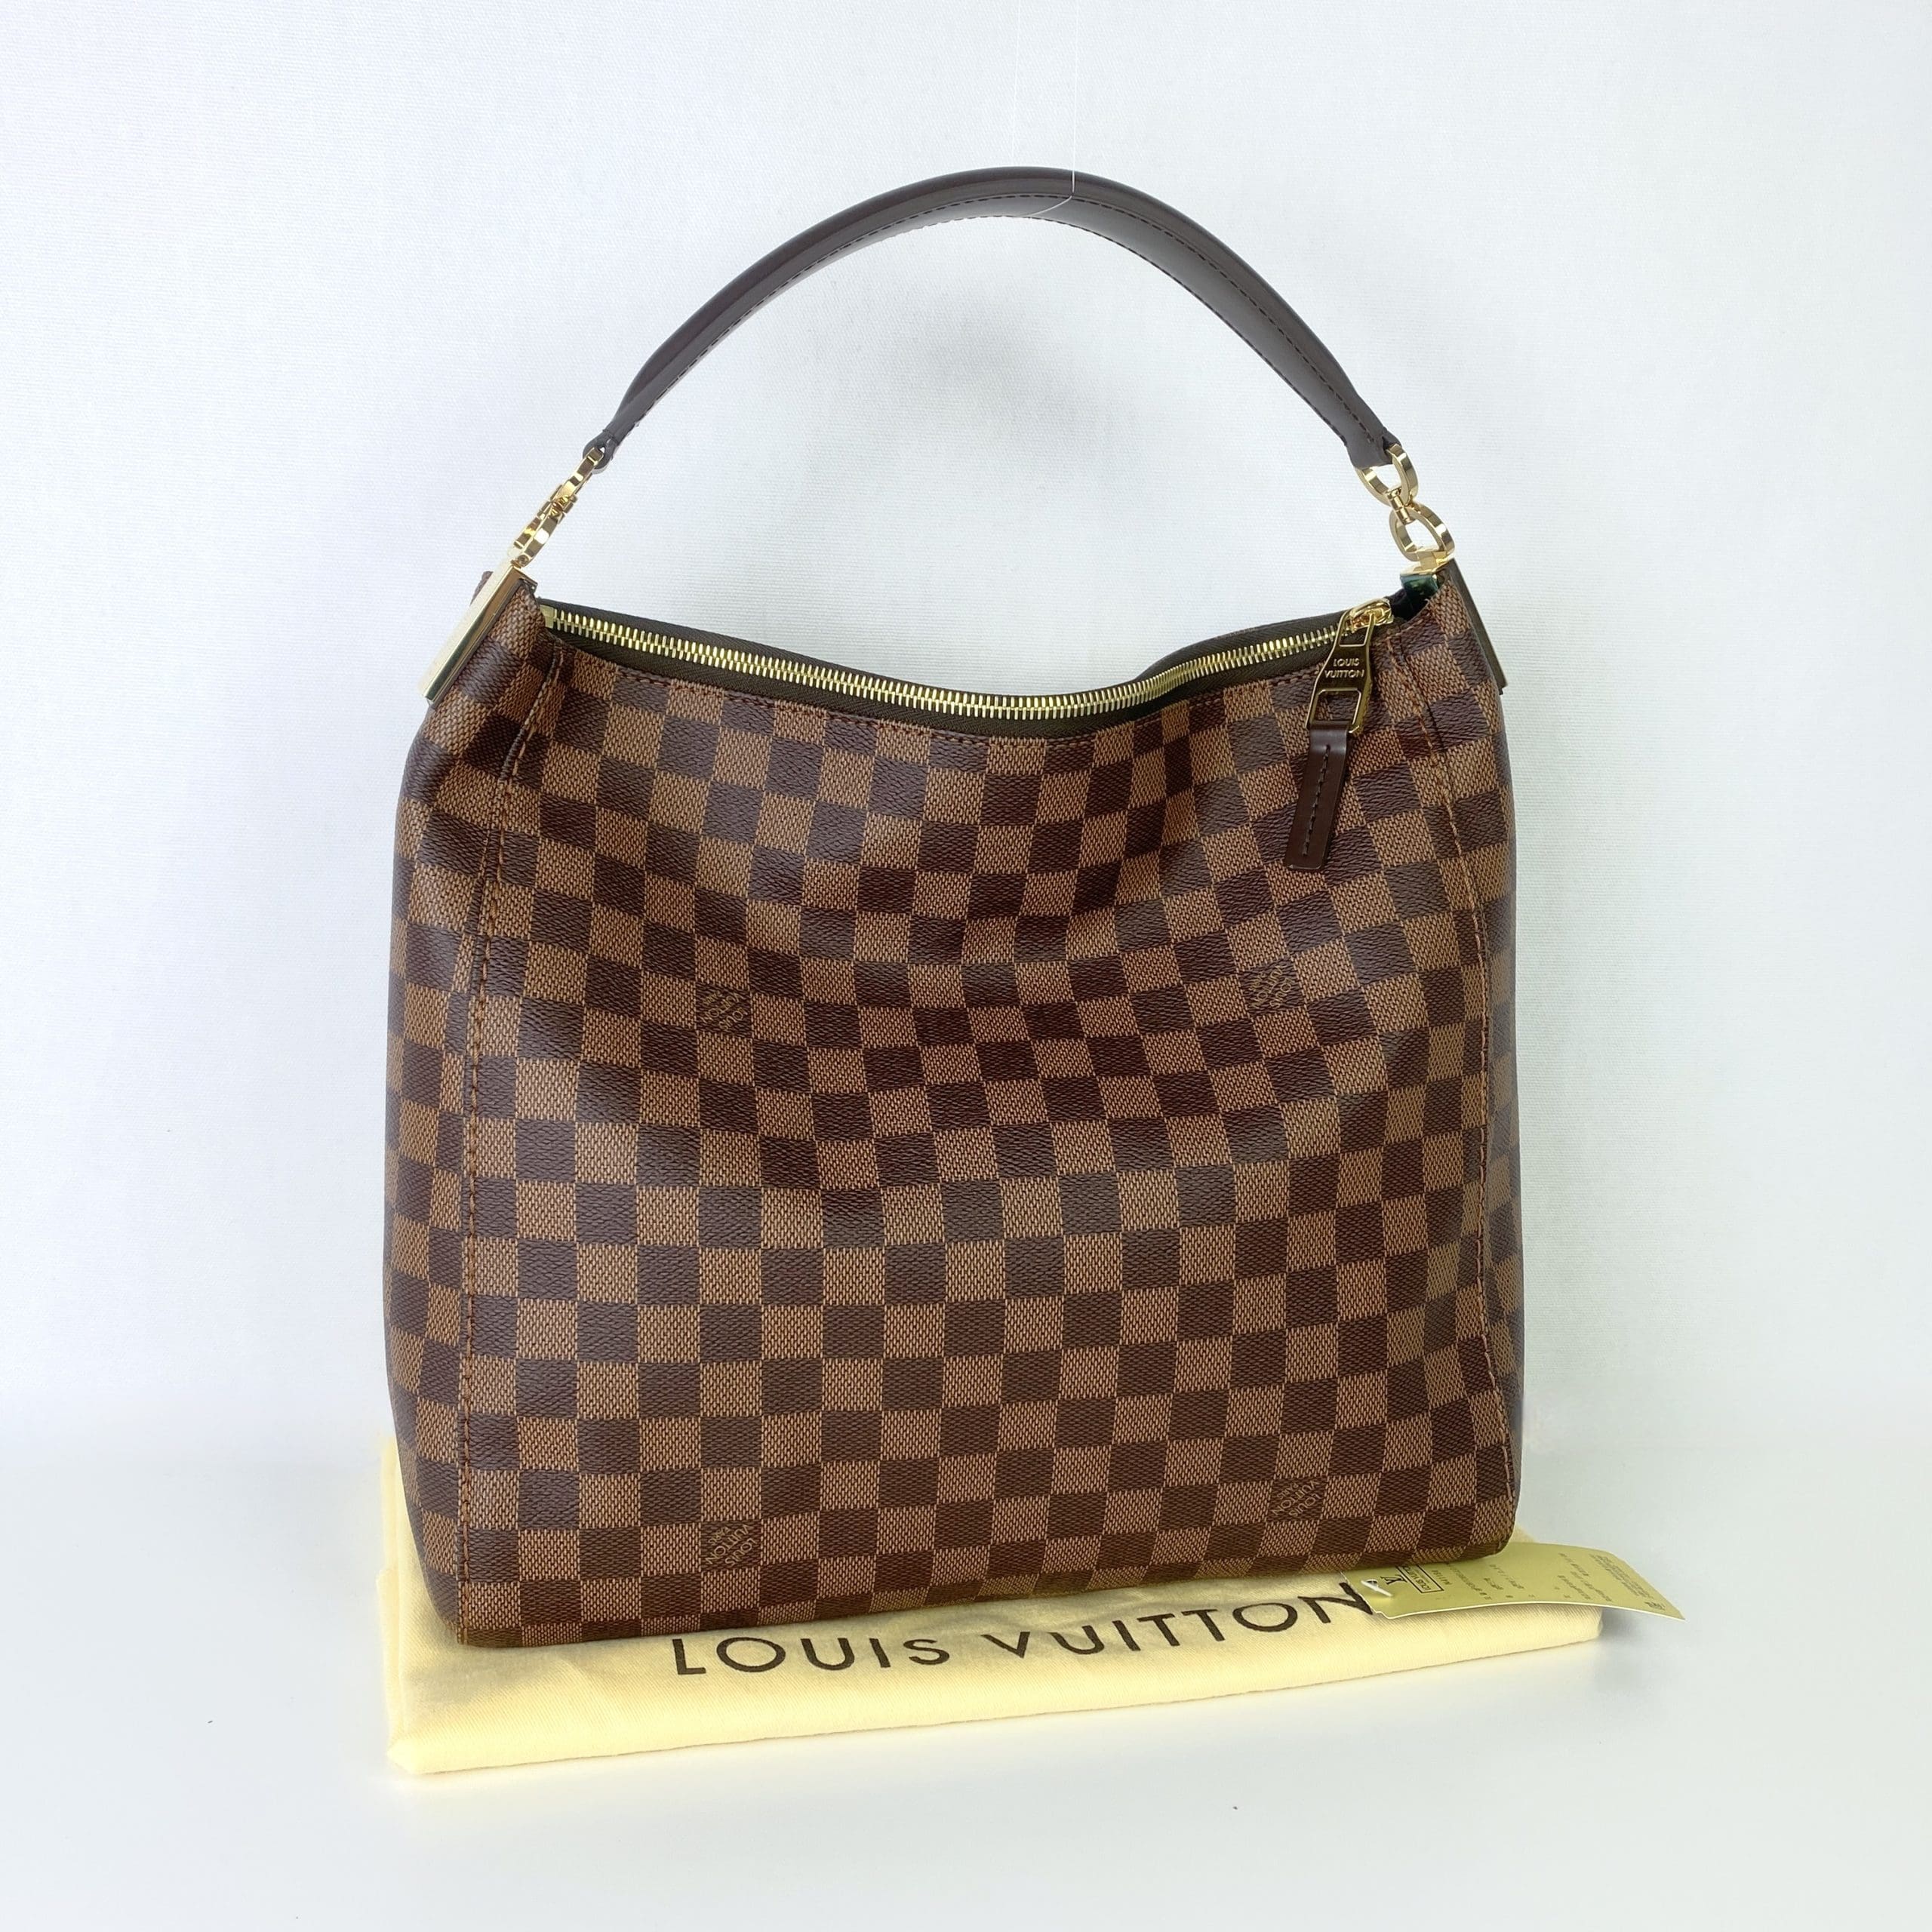 Louis Vuitton Damier Ebene Portobello PM - Brown Hobos, Handbags